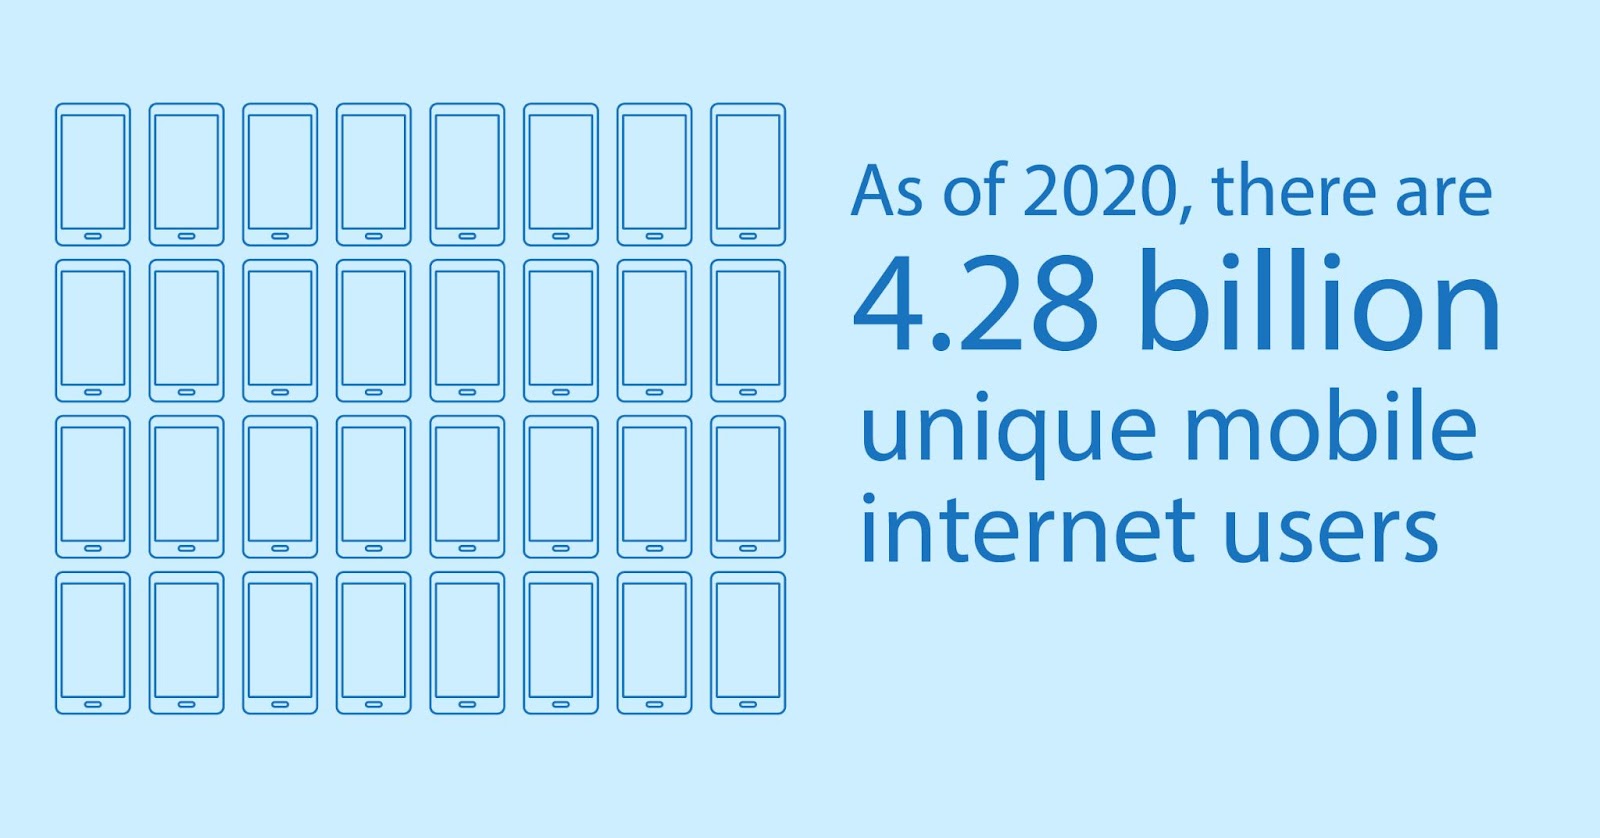 There are 4.28 billion unique mobile internet users